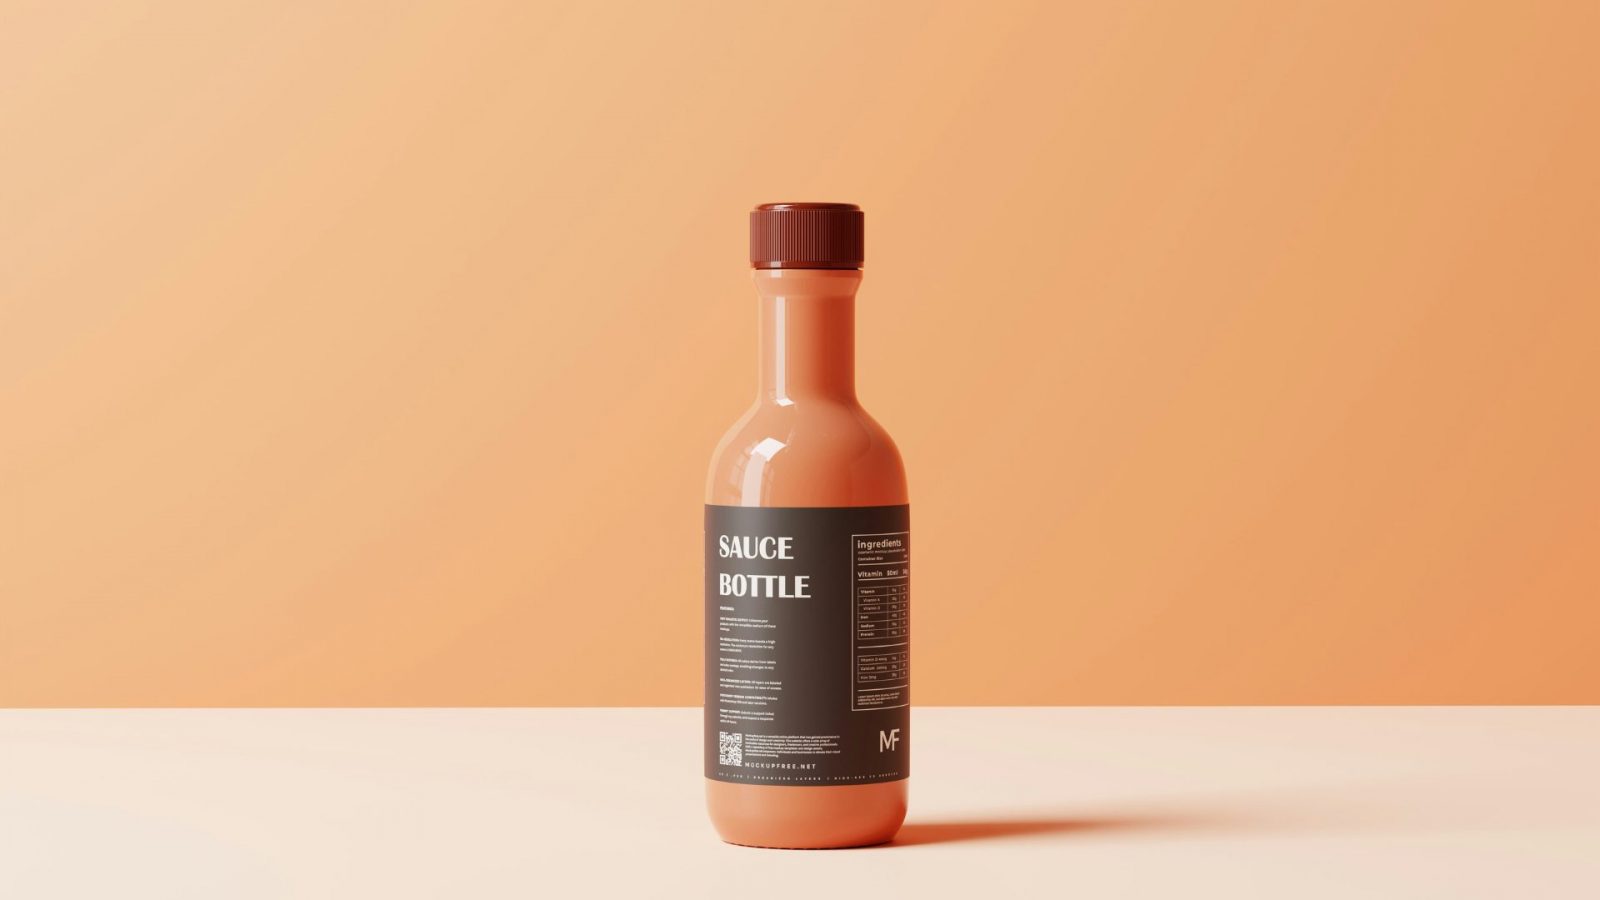 Sauce bottle